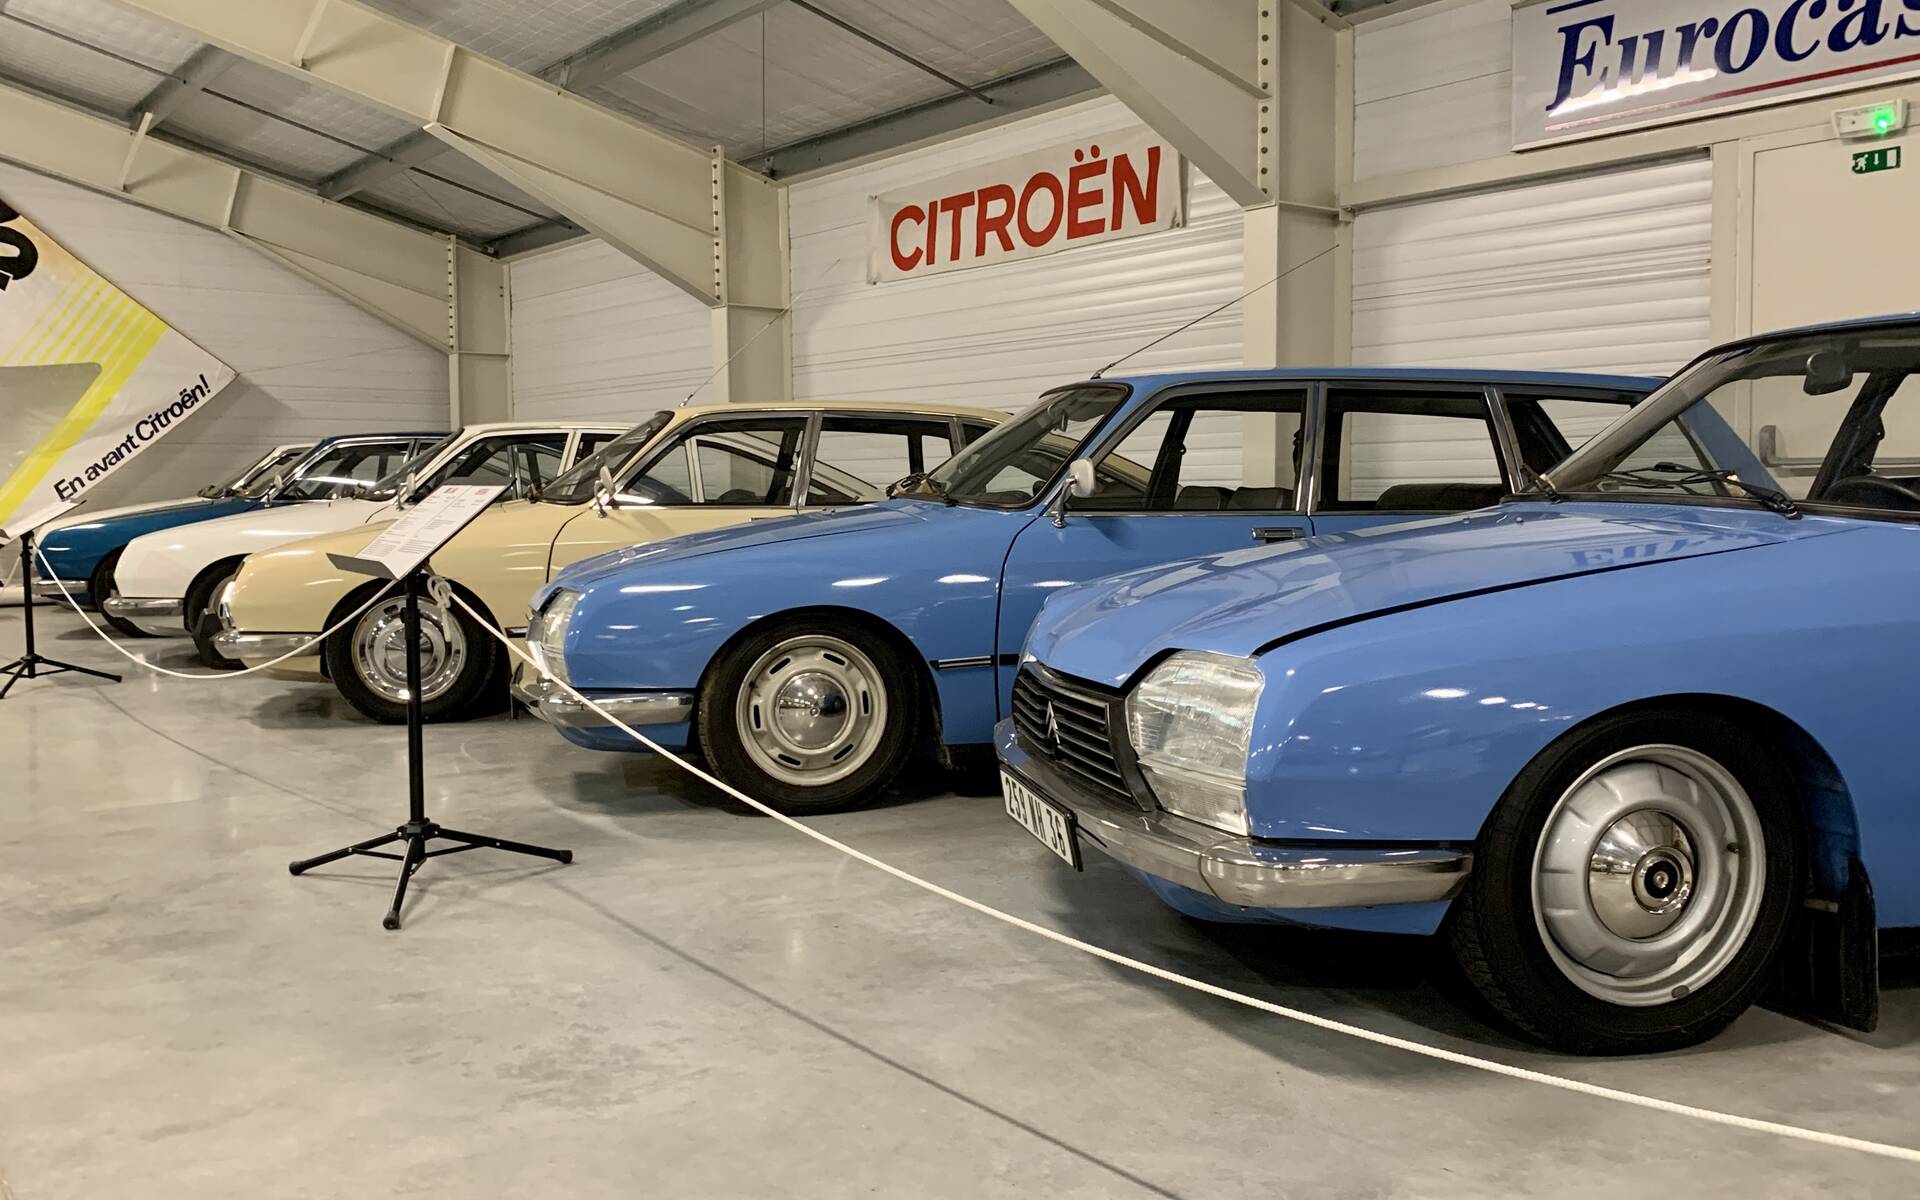 Photos: plus de 100 Citroën d'exception réunies dans un musée en France 543106-photos-plus-de-100-citroen-d-exception-reunies-dans-un-musee-en-france